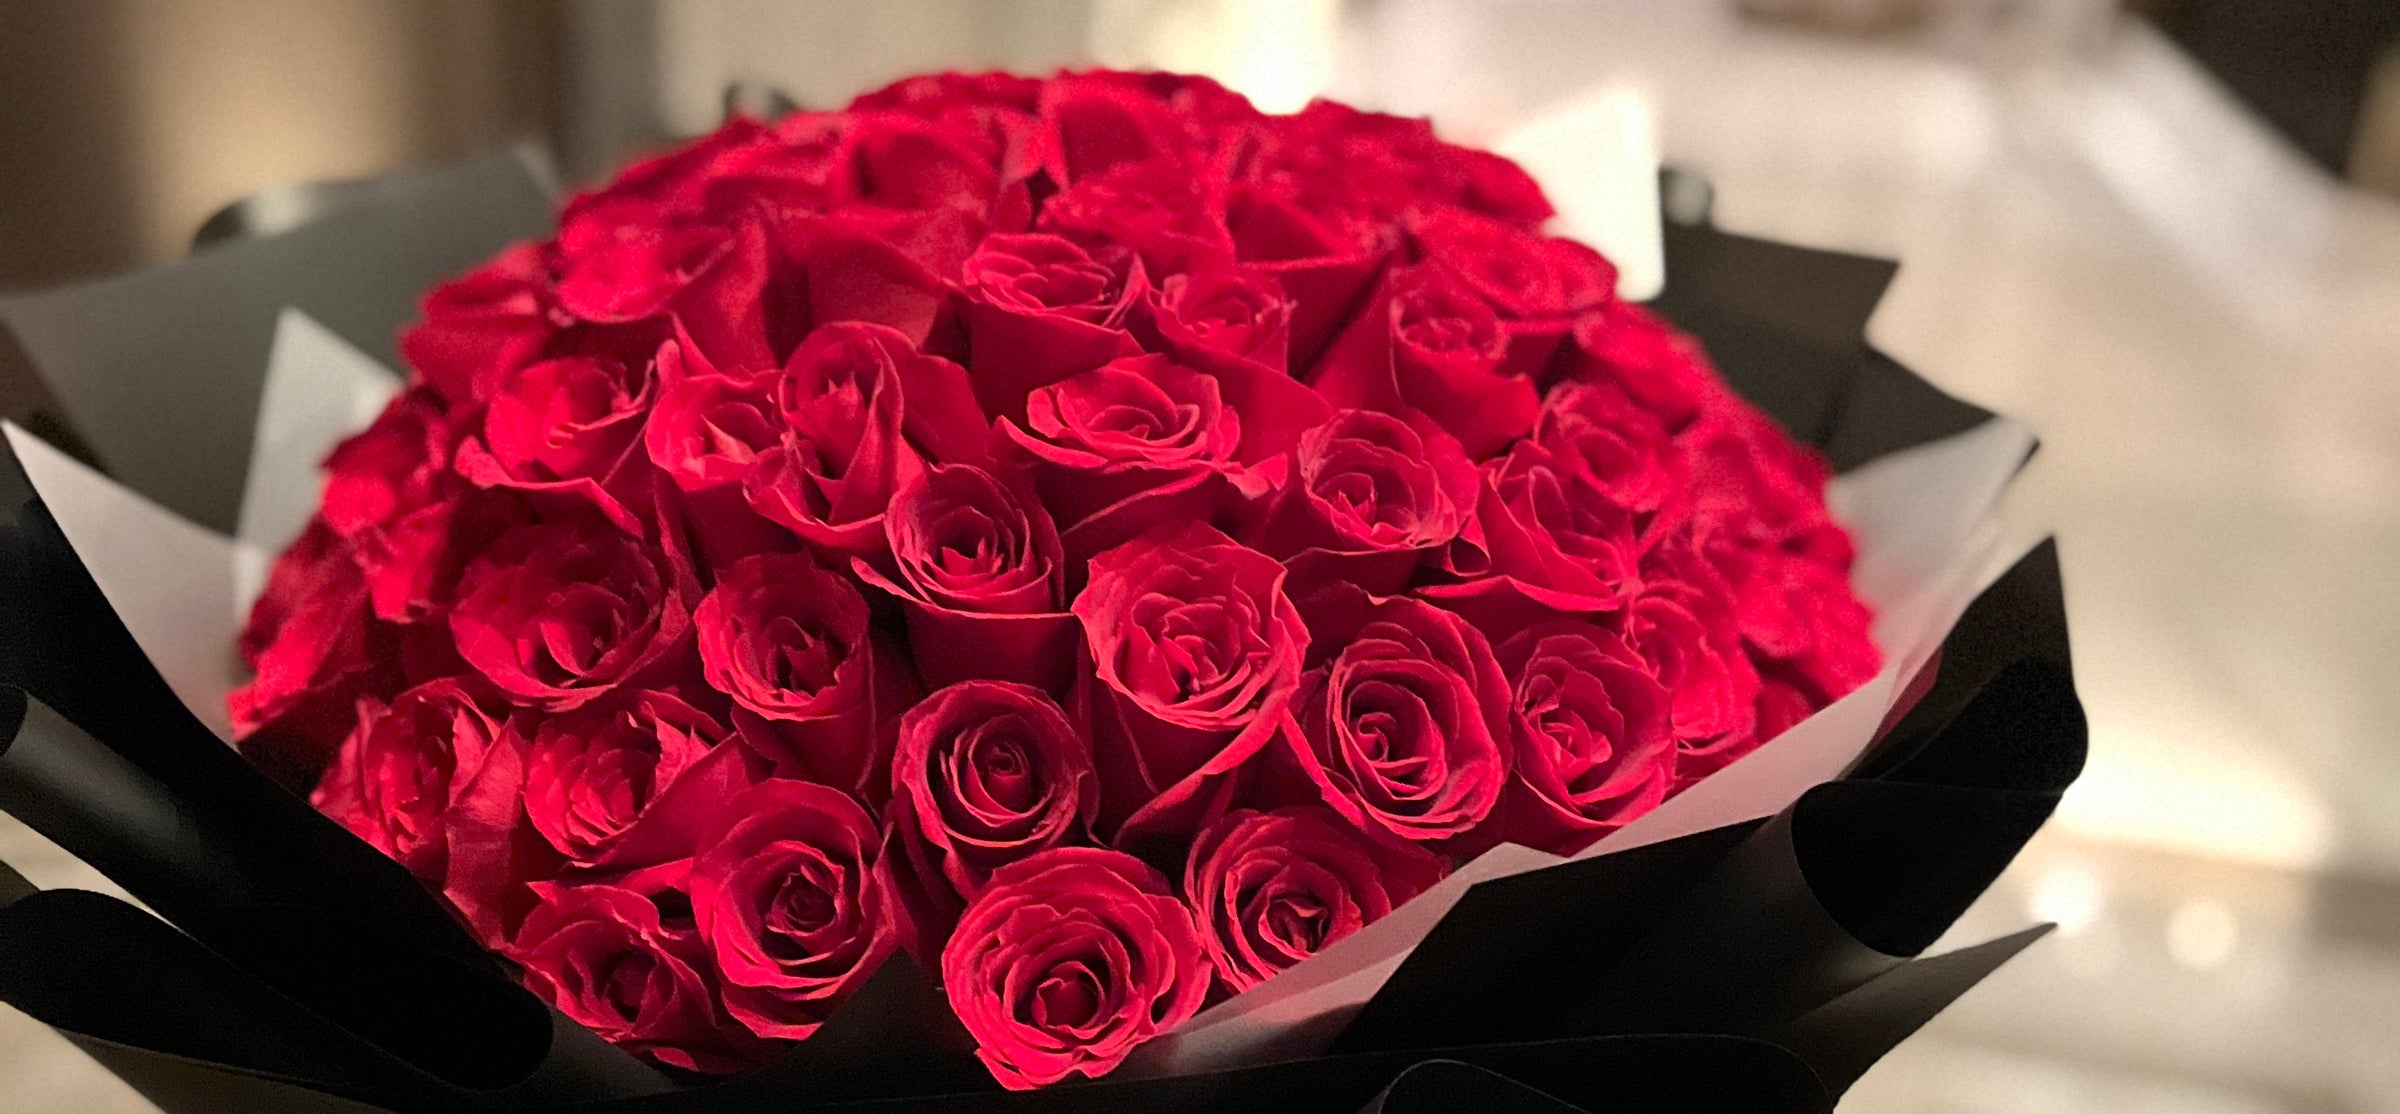 Proposal Bouquets - 花漾 C'est la vie en fleurs 